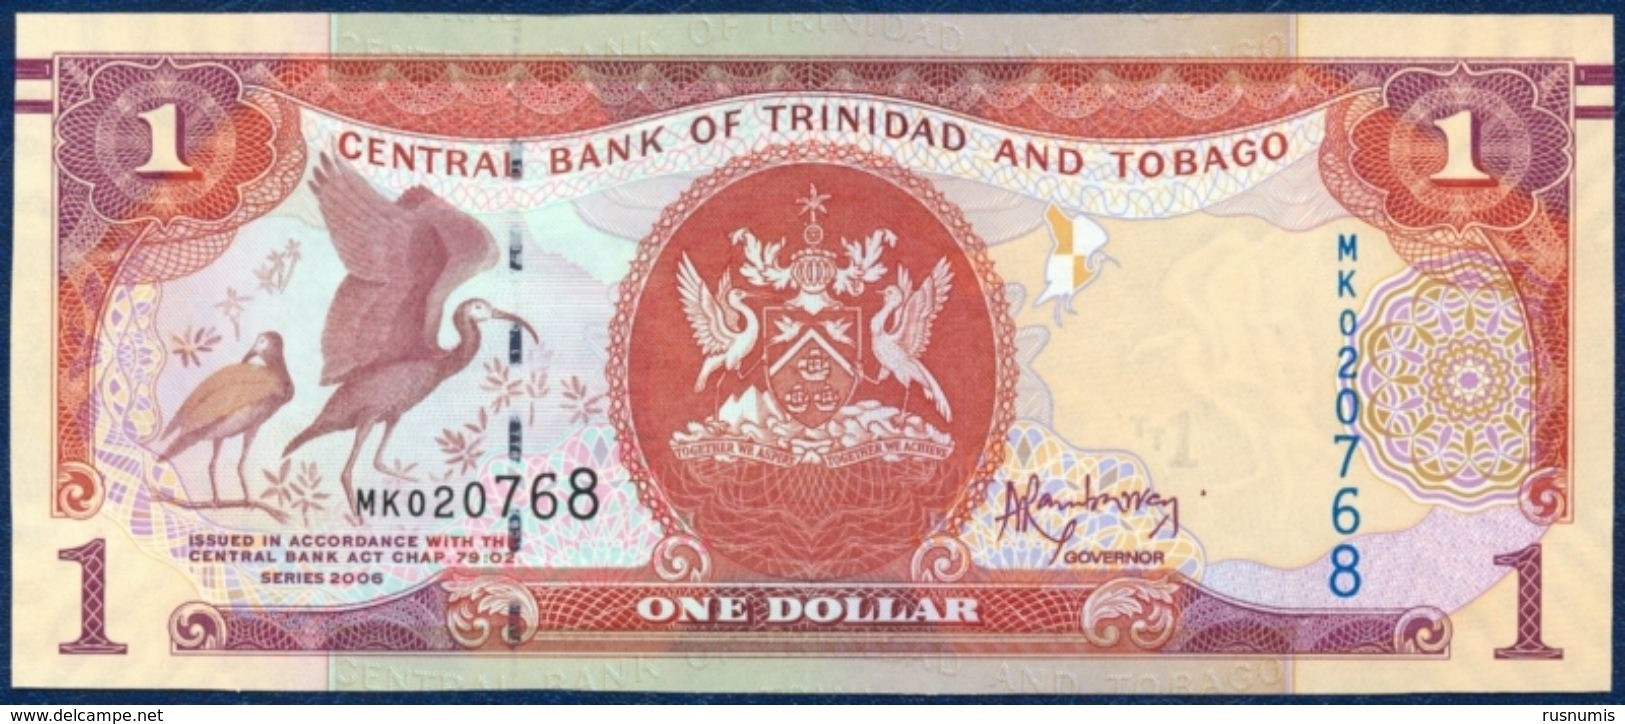 TRINIDAD AND TOBAGO 1 DOLLAR P-46A SIGNATURE: Jwala Rambarran BIRD - SCARLET IBIS CENTRAL BANK 2006 UNC - Trinité & Tobago